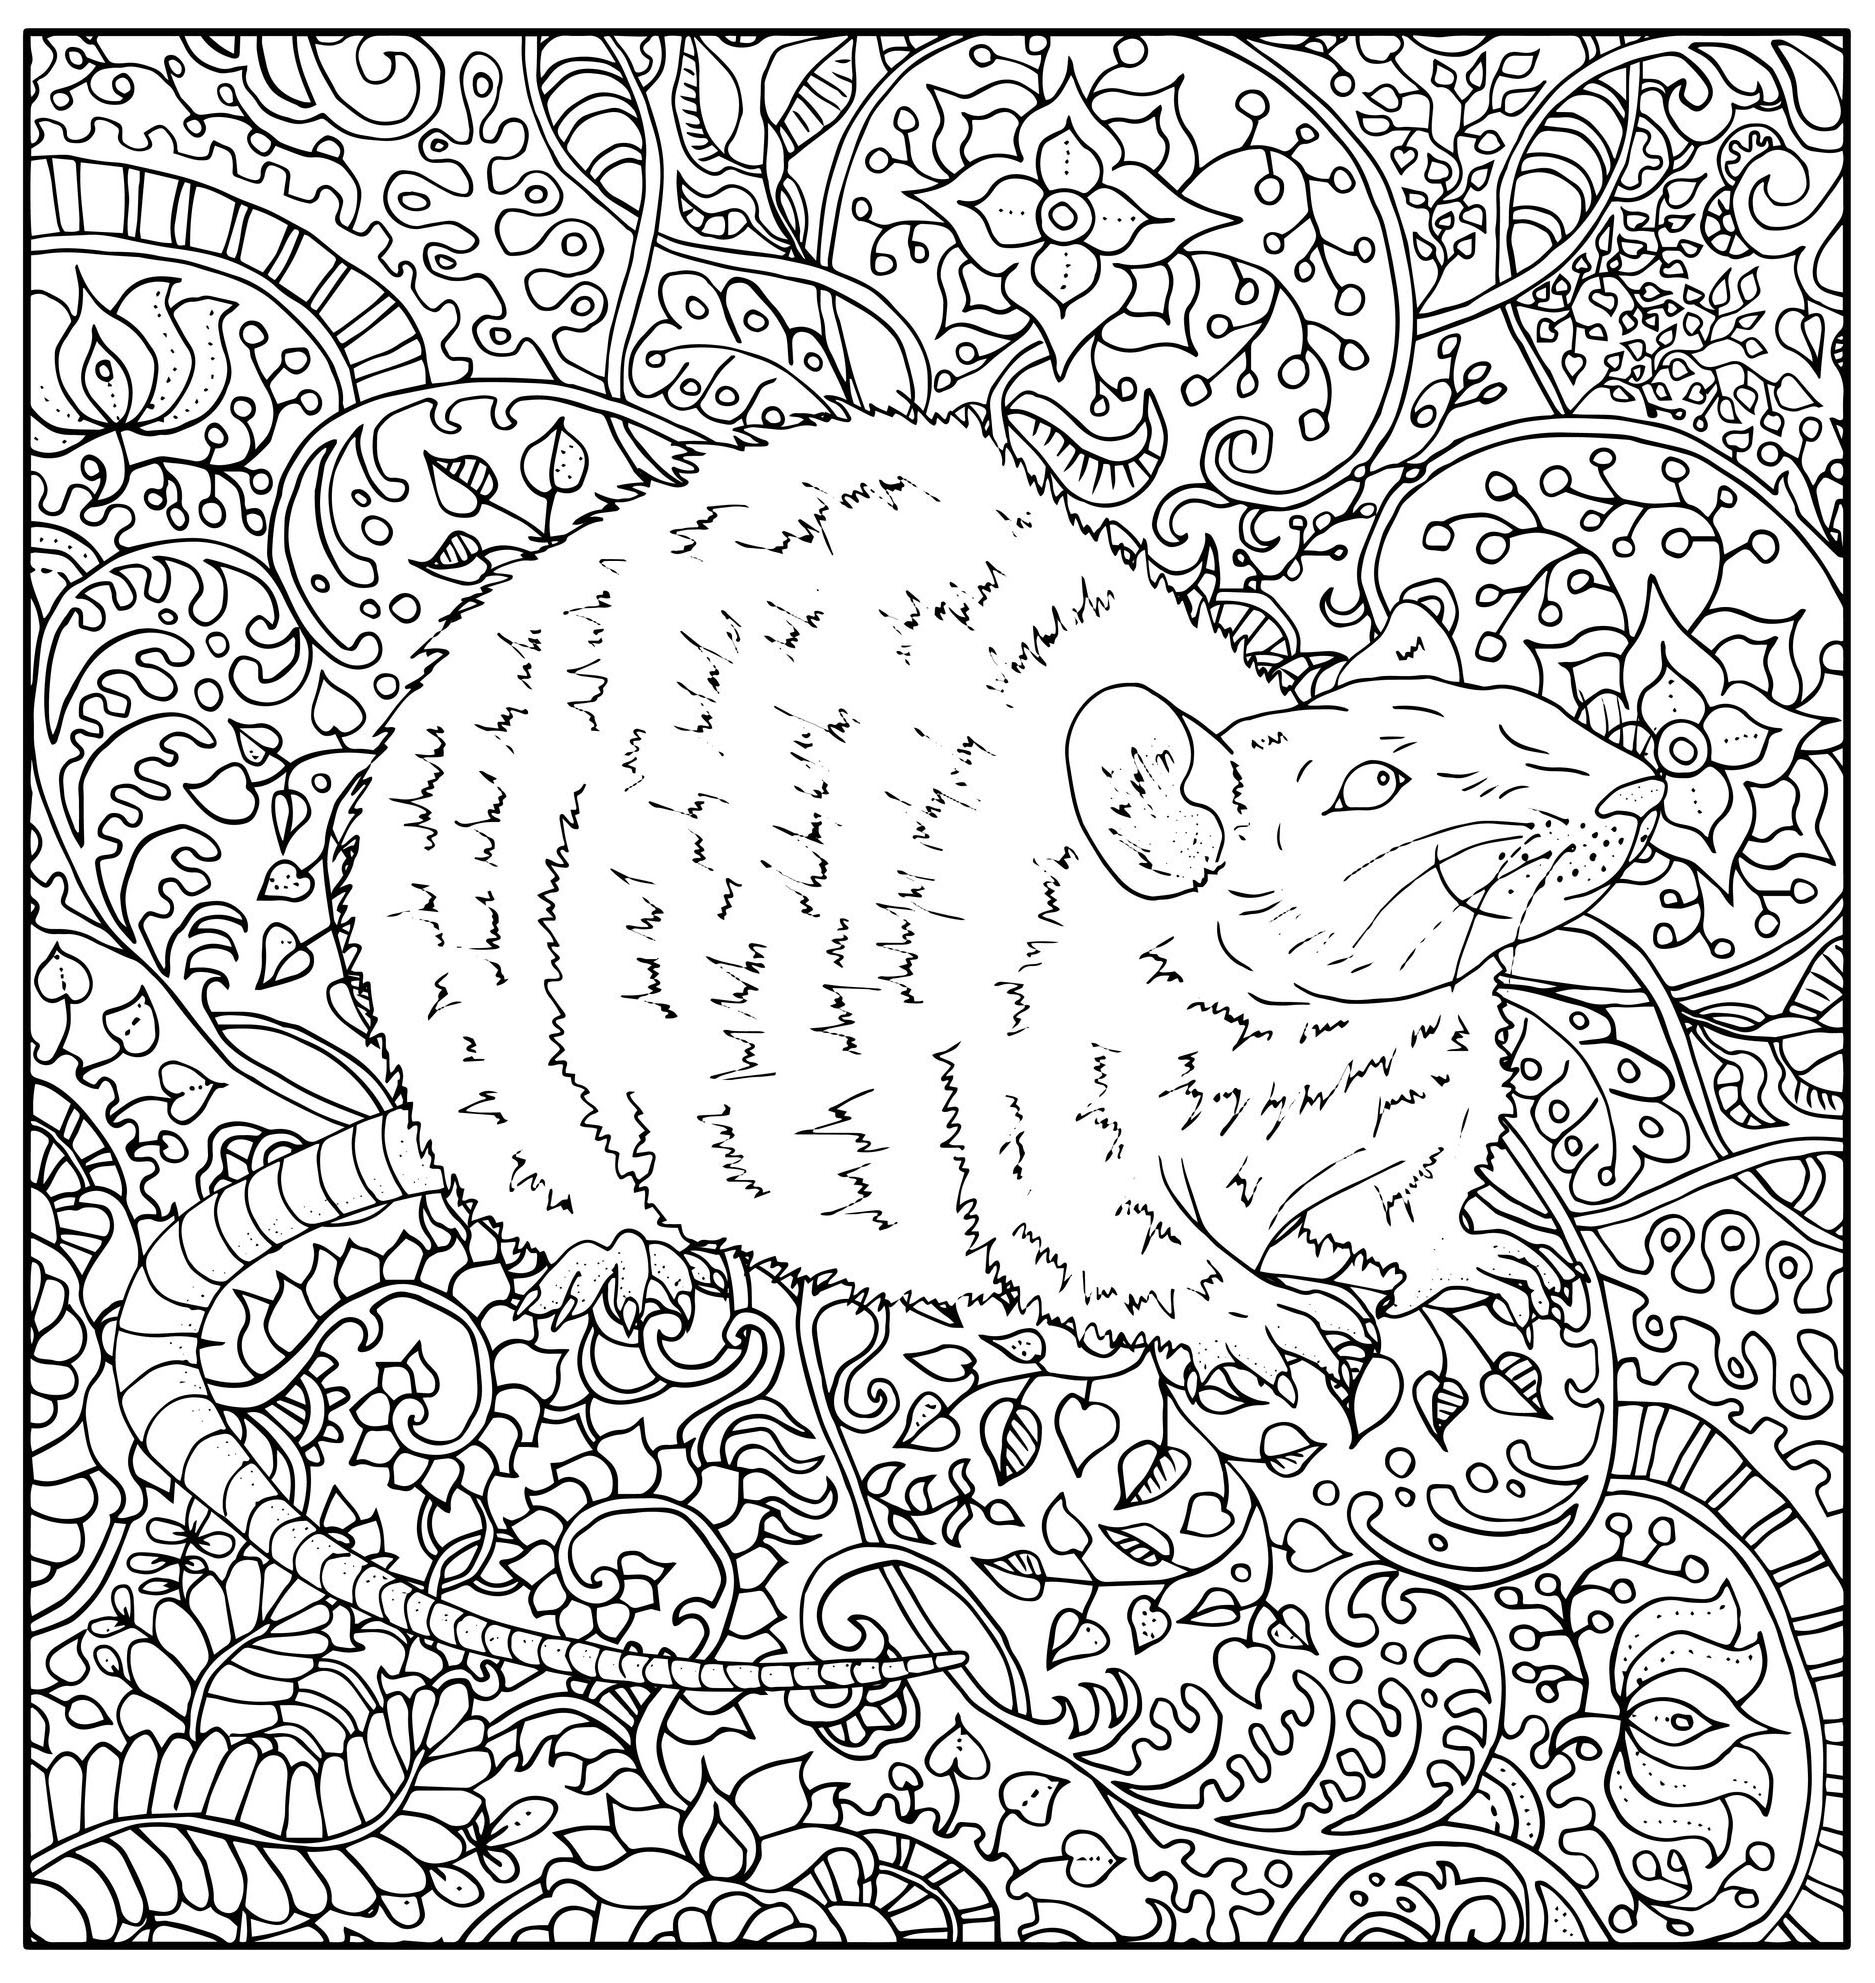 Ausmalbild, das eine realistisch gezeichnete Ratte mit verschiedenen abstrakten pflanzlichen Mustern darstellt, Quelle : 123rf   Künstler : Vera Petruk